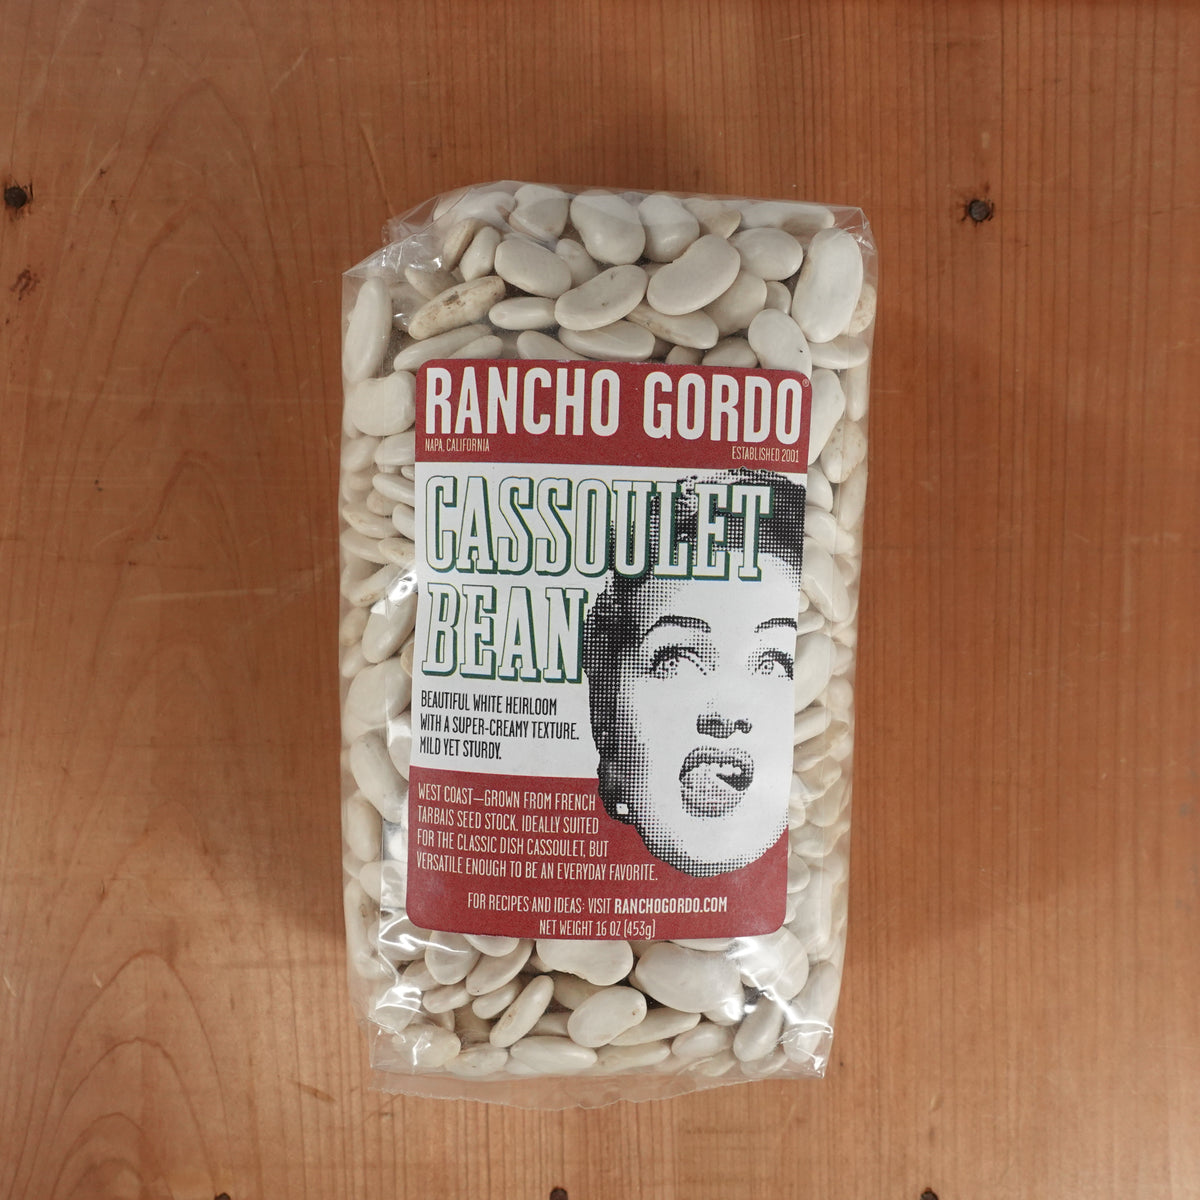 Rancho Gordo Cassoulet Bean (Tarbais) - 1lb